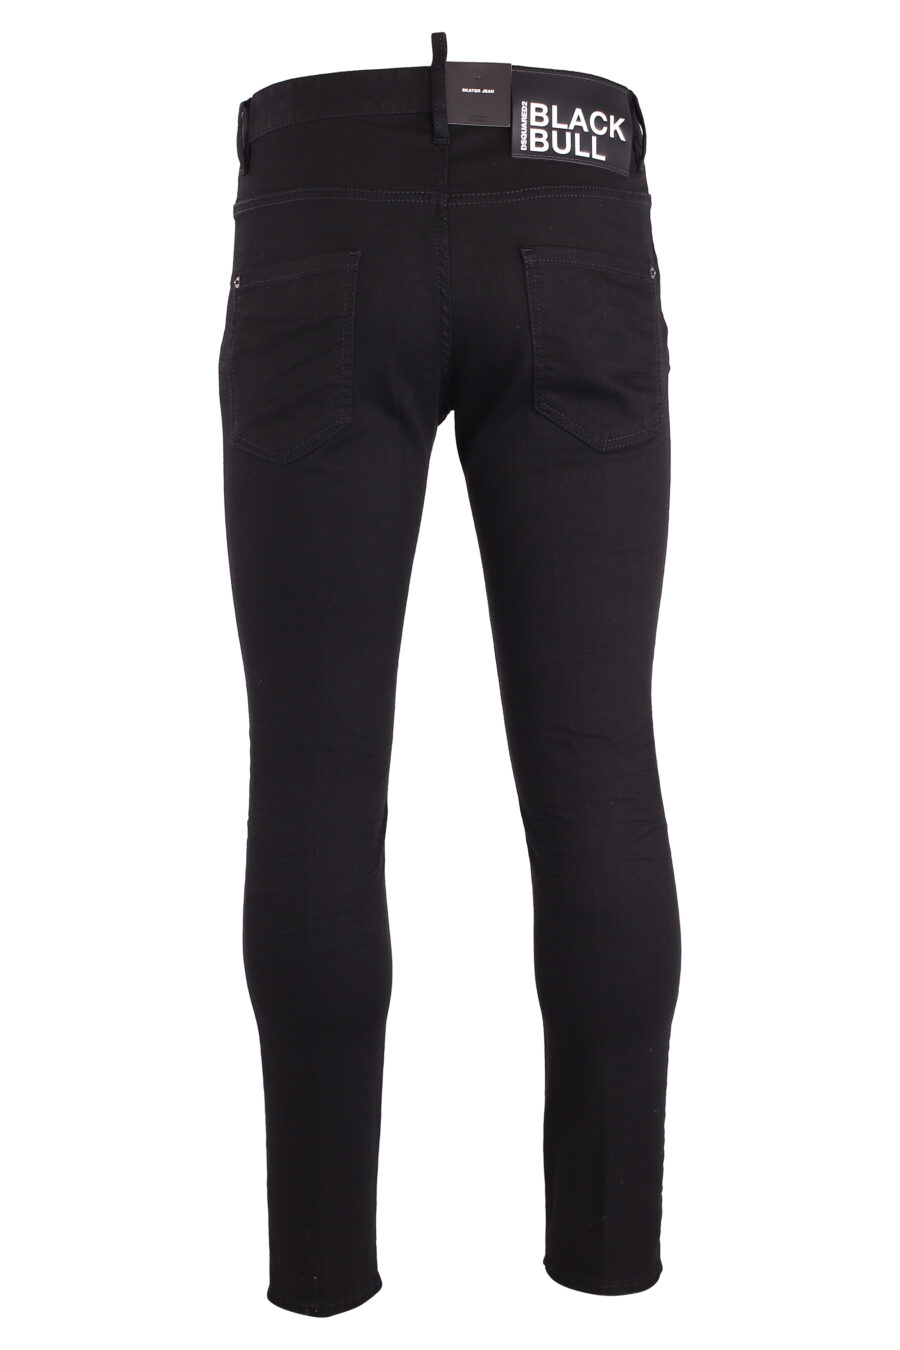 Plain black "skater jean" jeans - IMG 9000